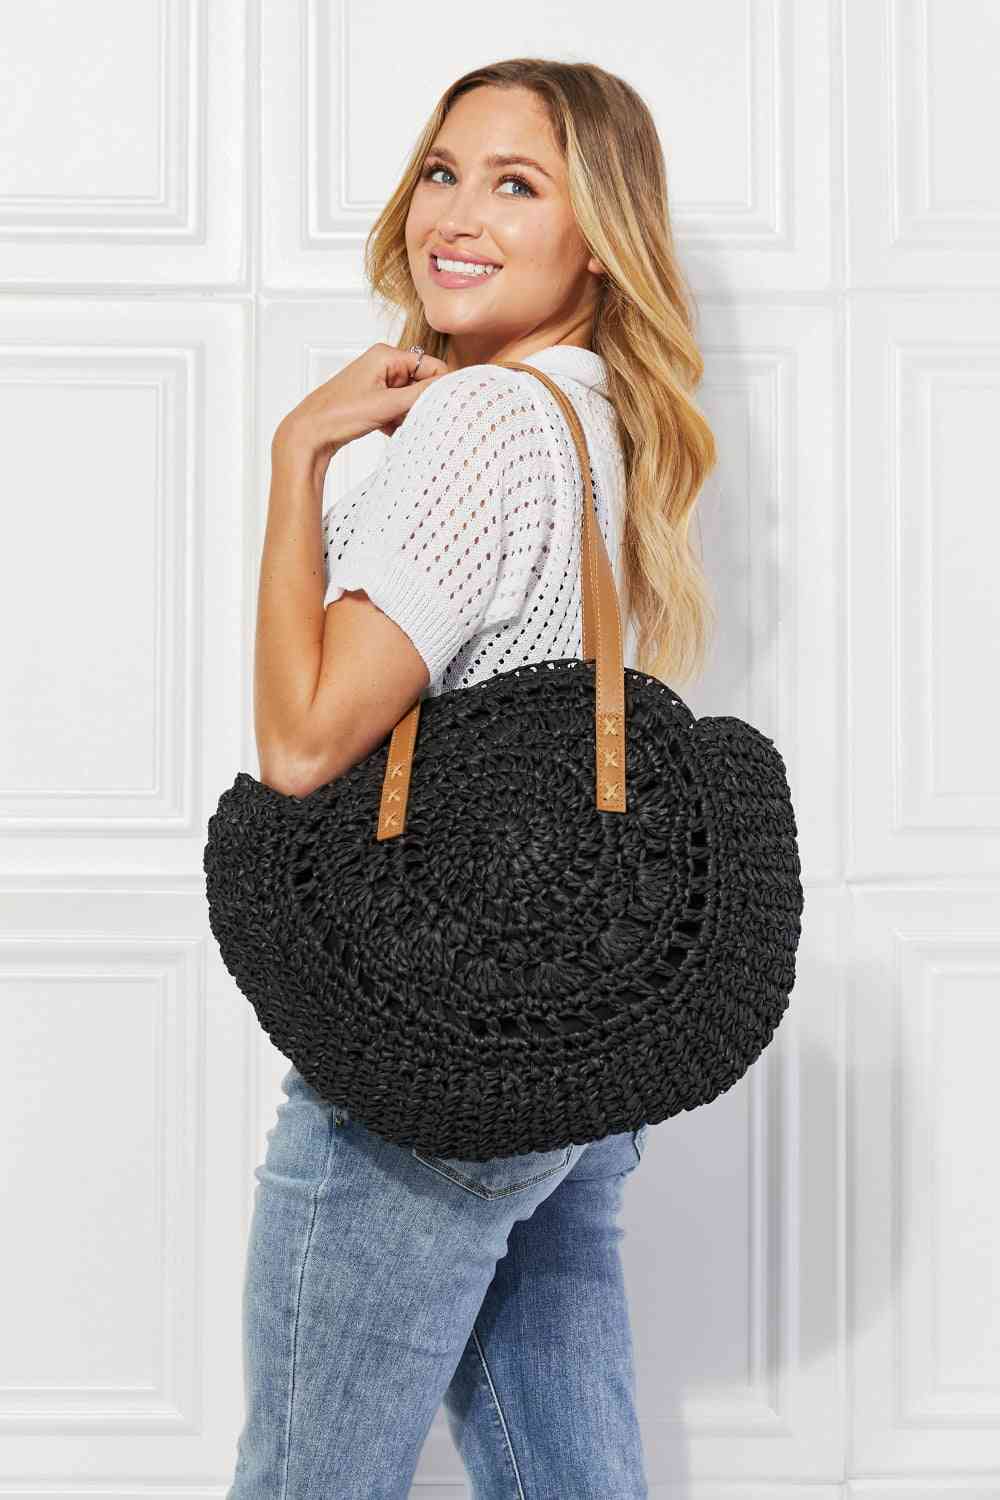 Justin Taylor C'est La Vie Crochet Handbag in Black - Cheeky Chic Boutique